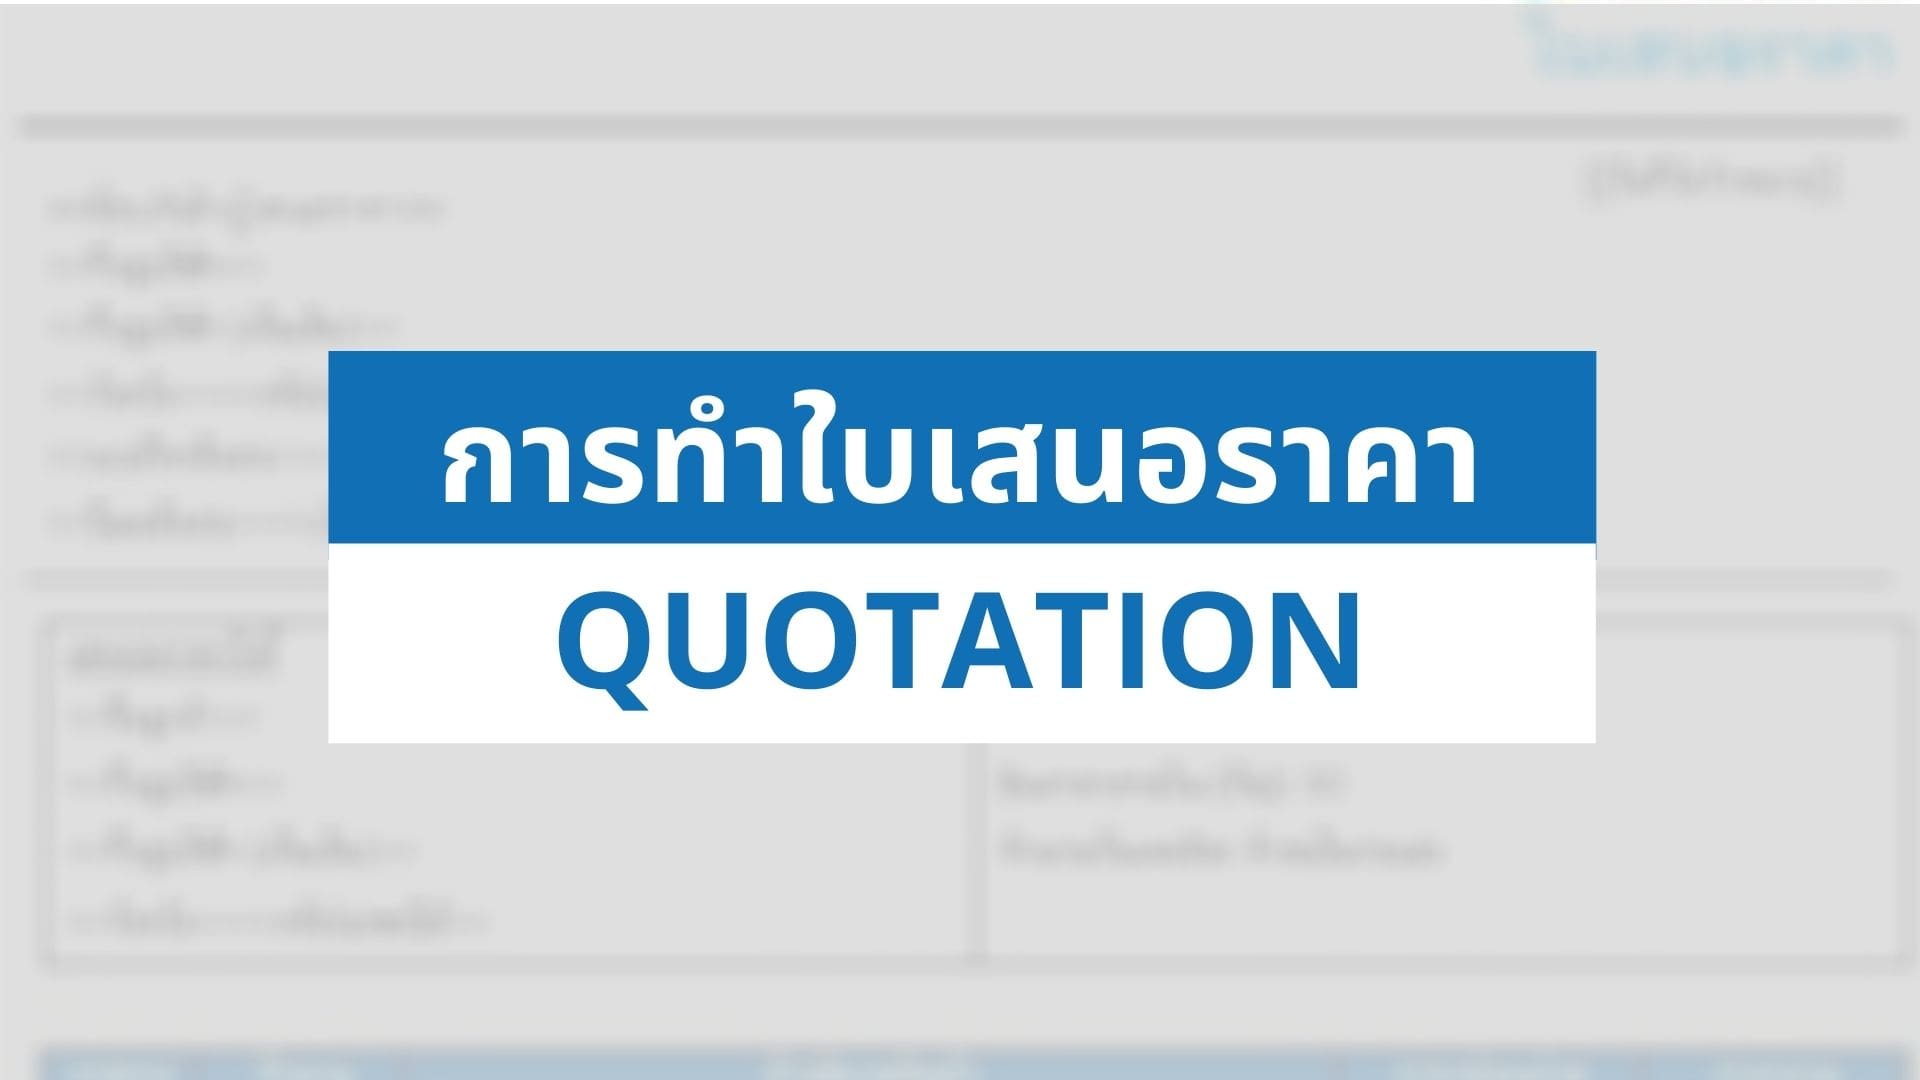 ลูกค้าขอใบเสนอราคา เราต้องทำอะไรบ้าง? (พร้อมตัวอย่าง) - Thai Winner